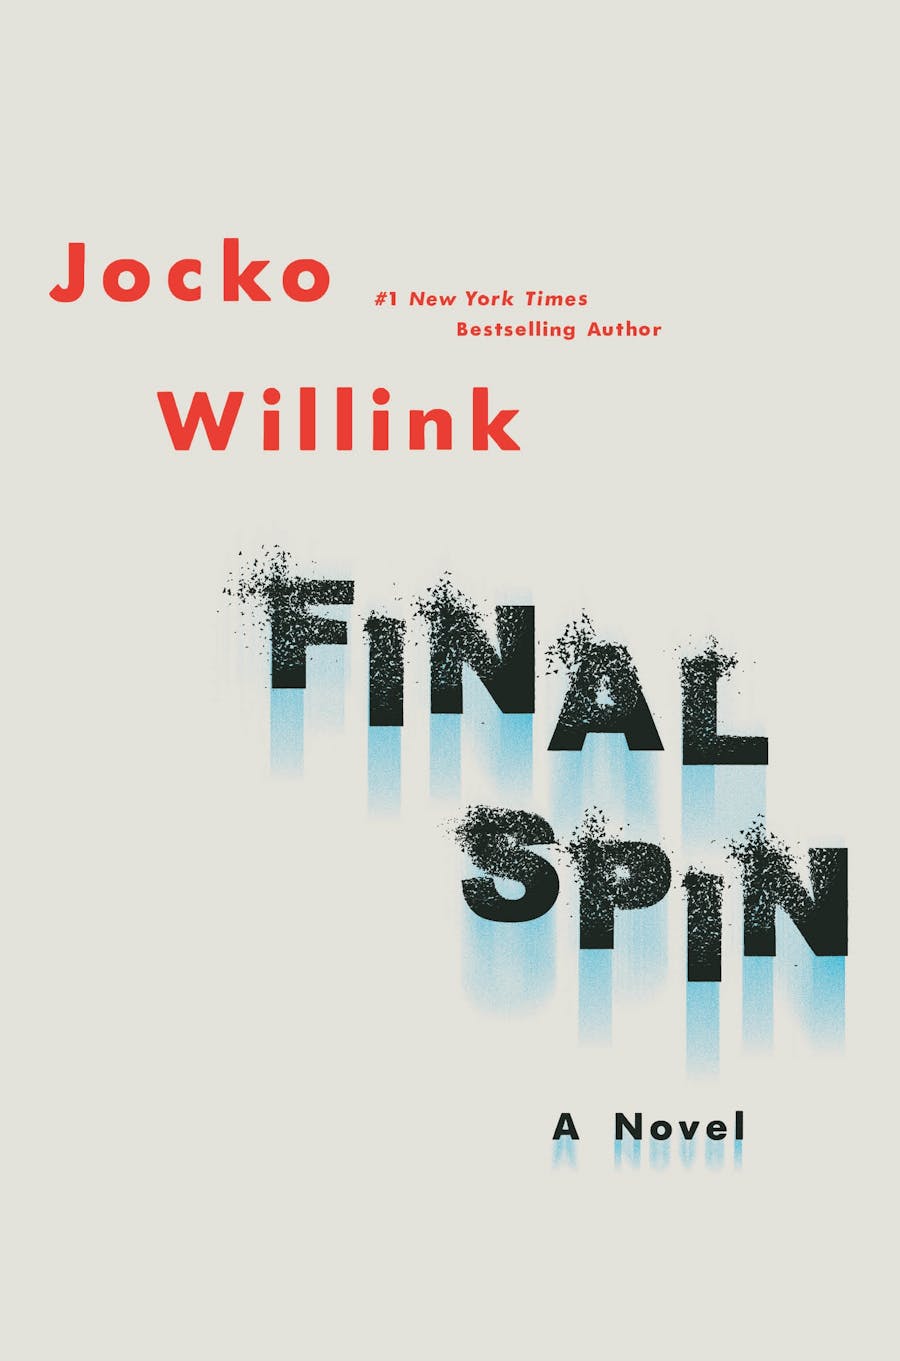 Final Spin by Jocko Willink